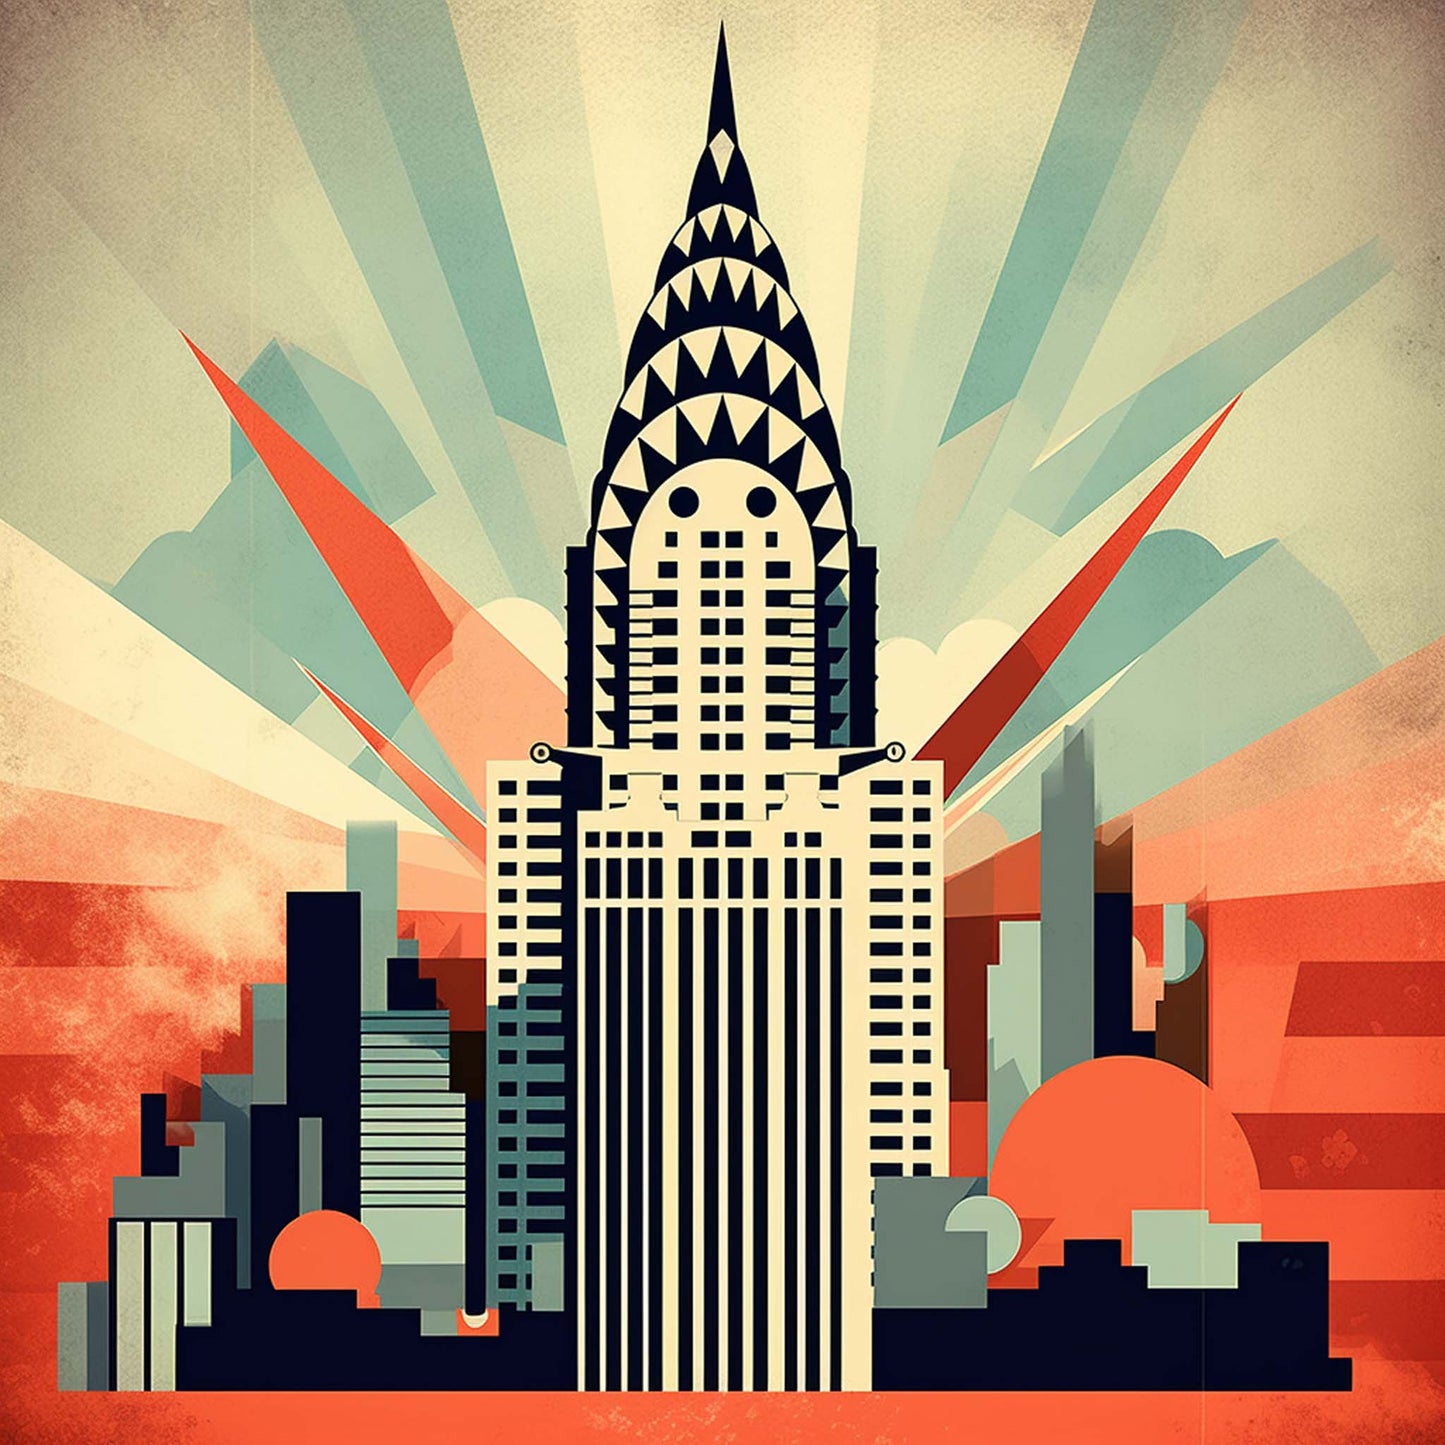 New York Chrysler Building - Wandbild in der Stilrichtung des Minimalismus